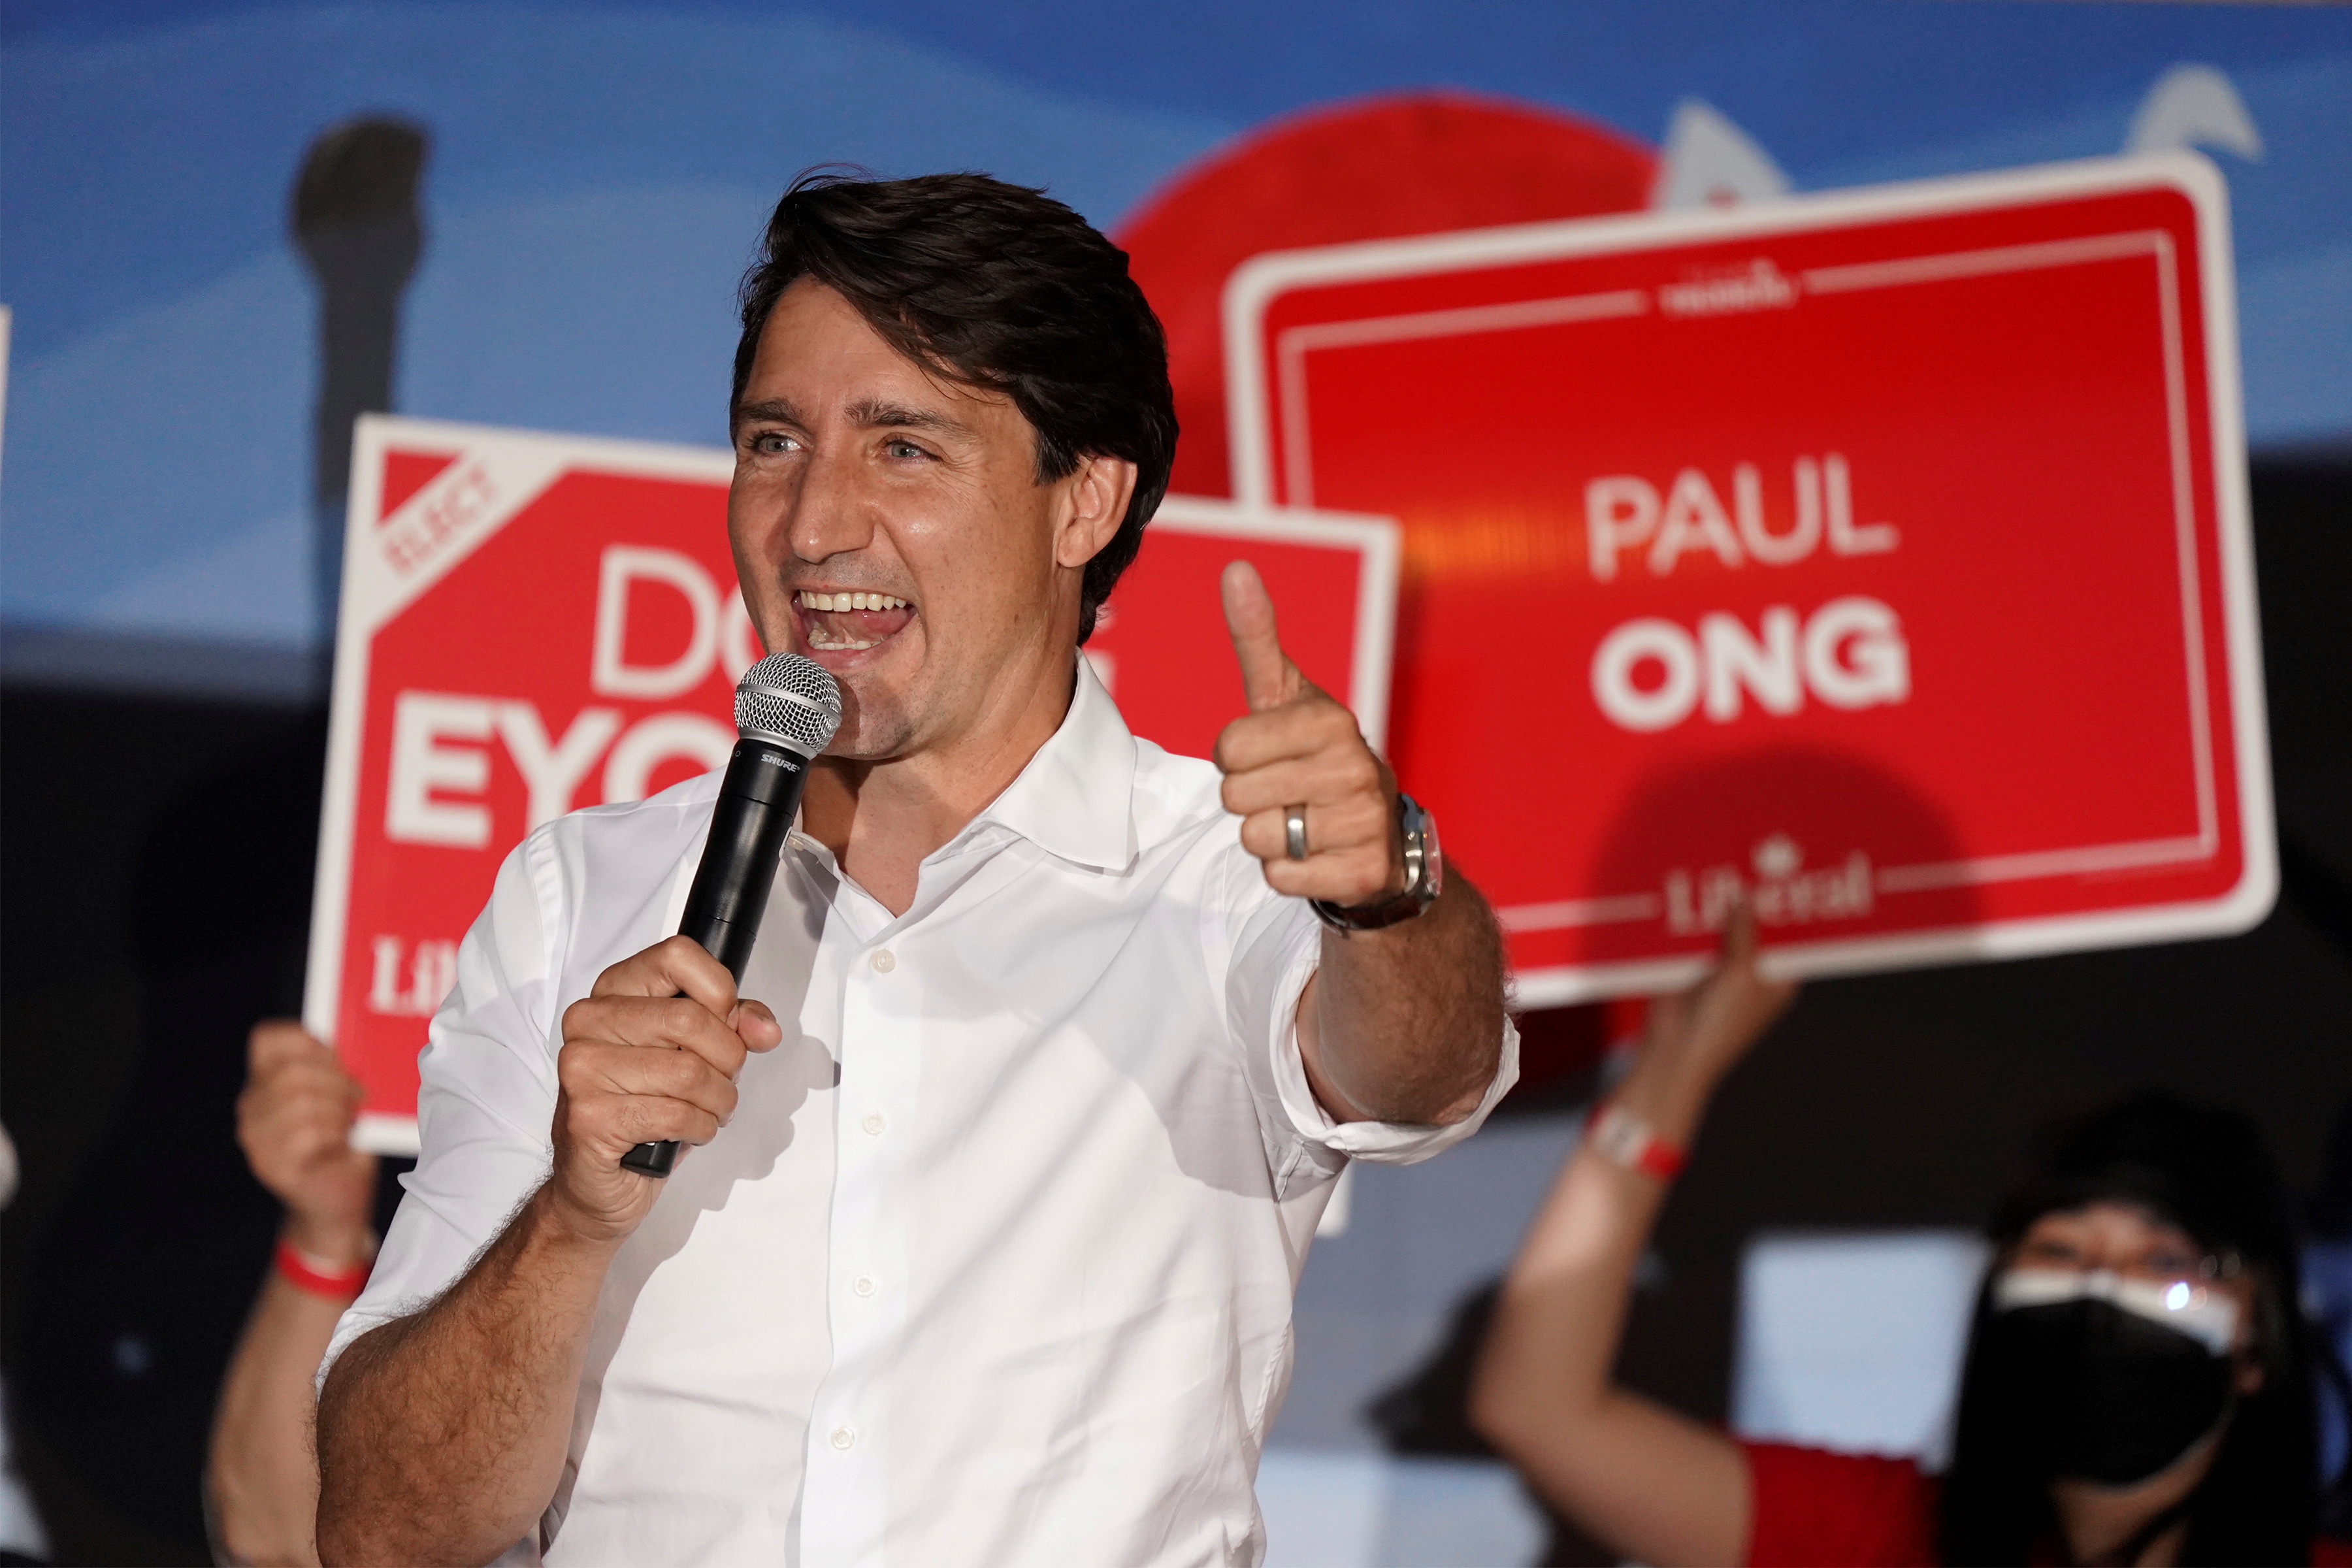 Canada's Prime Minister Justin Trudeau campaigns in Winnipeg, Manitoba